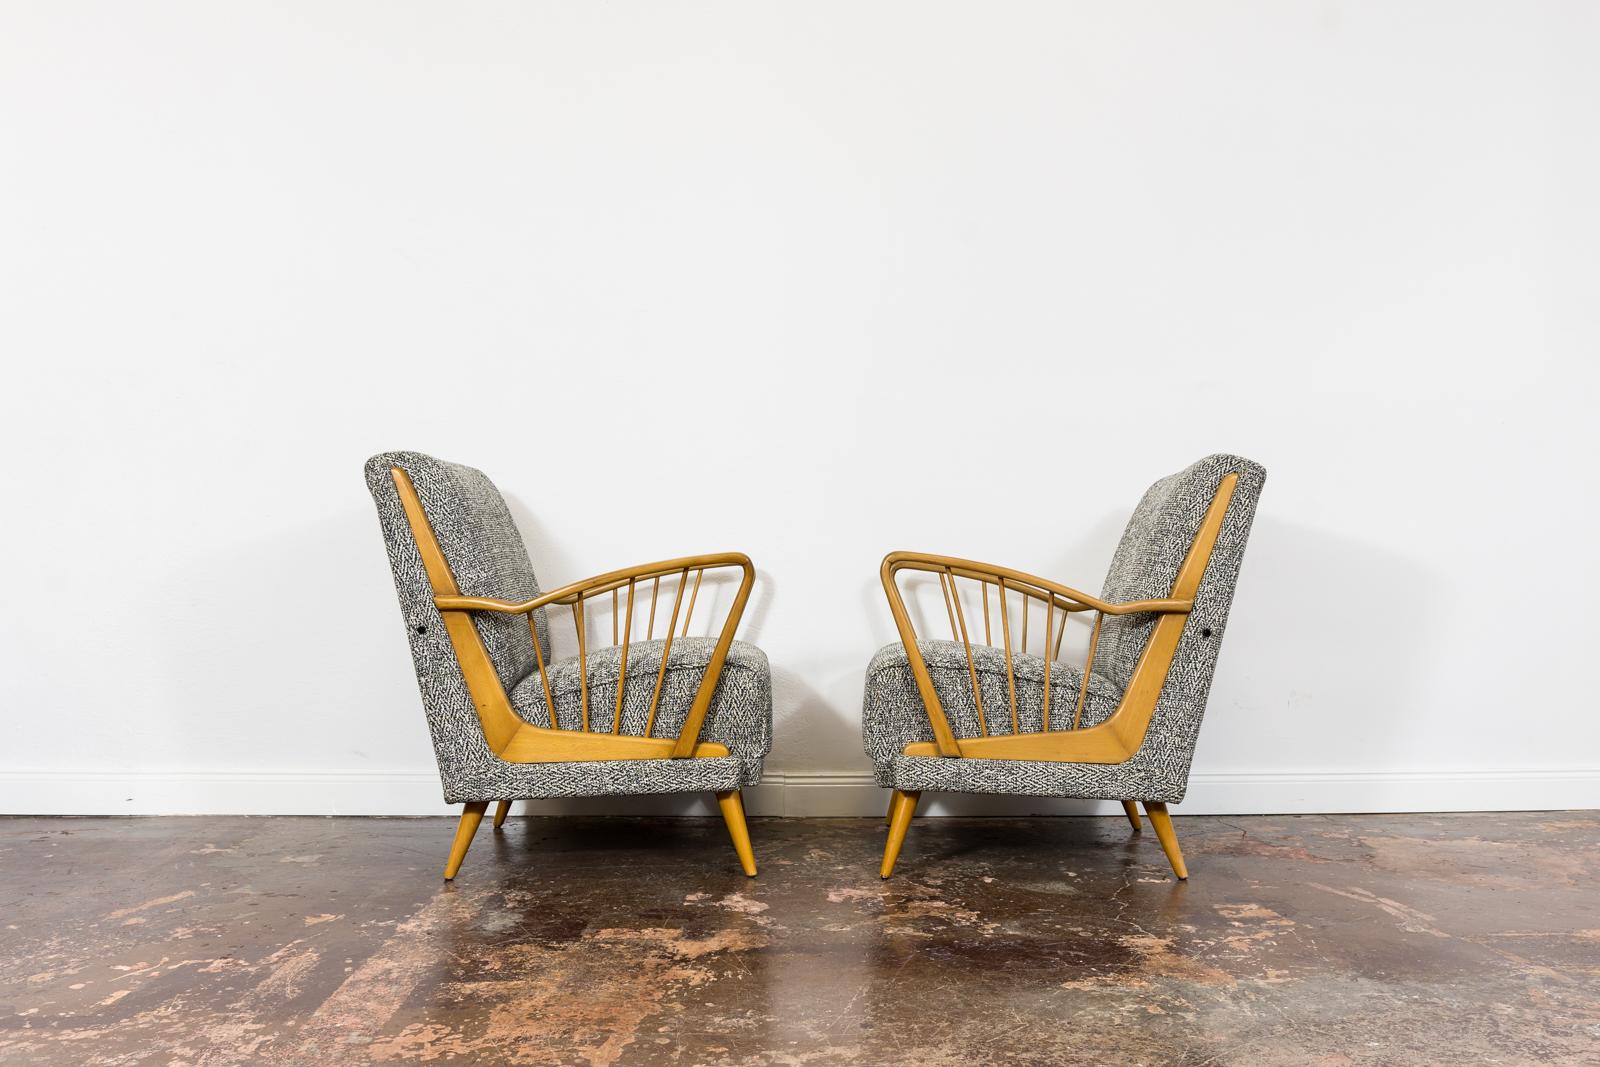 Paire de fauteuils Mid-Century, années 1950, Allemagne.
Les pieds en bois massif et l'accoudoir en forme de harpe ont été entièrement restaurés et remis à neuf.
Rembourré en tissu noir-gris-blanc.